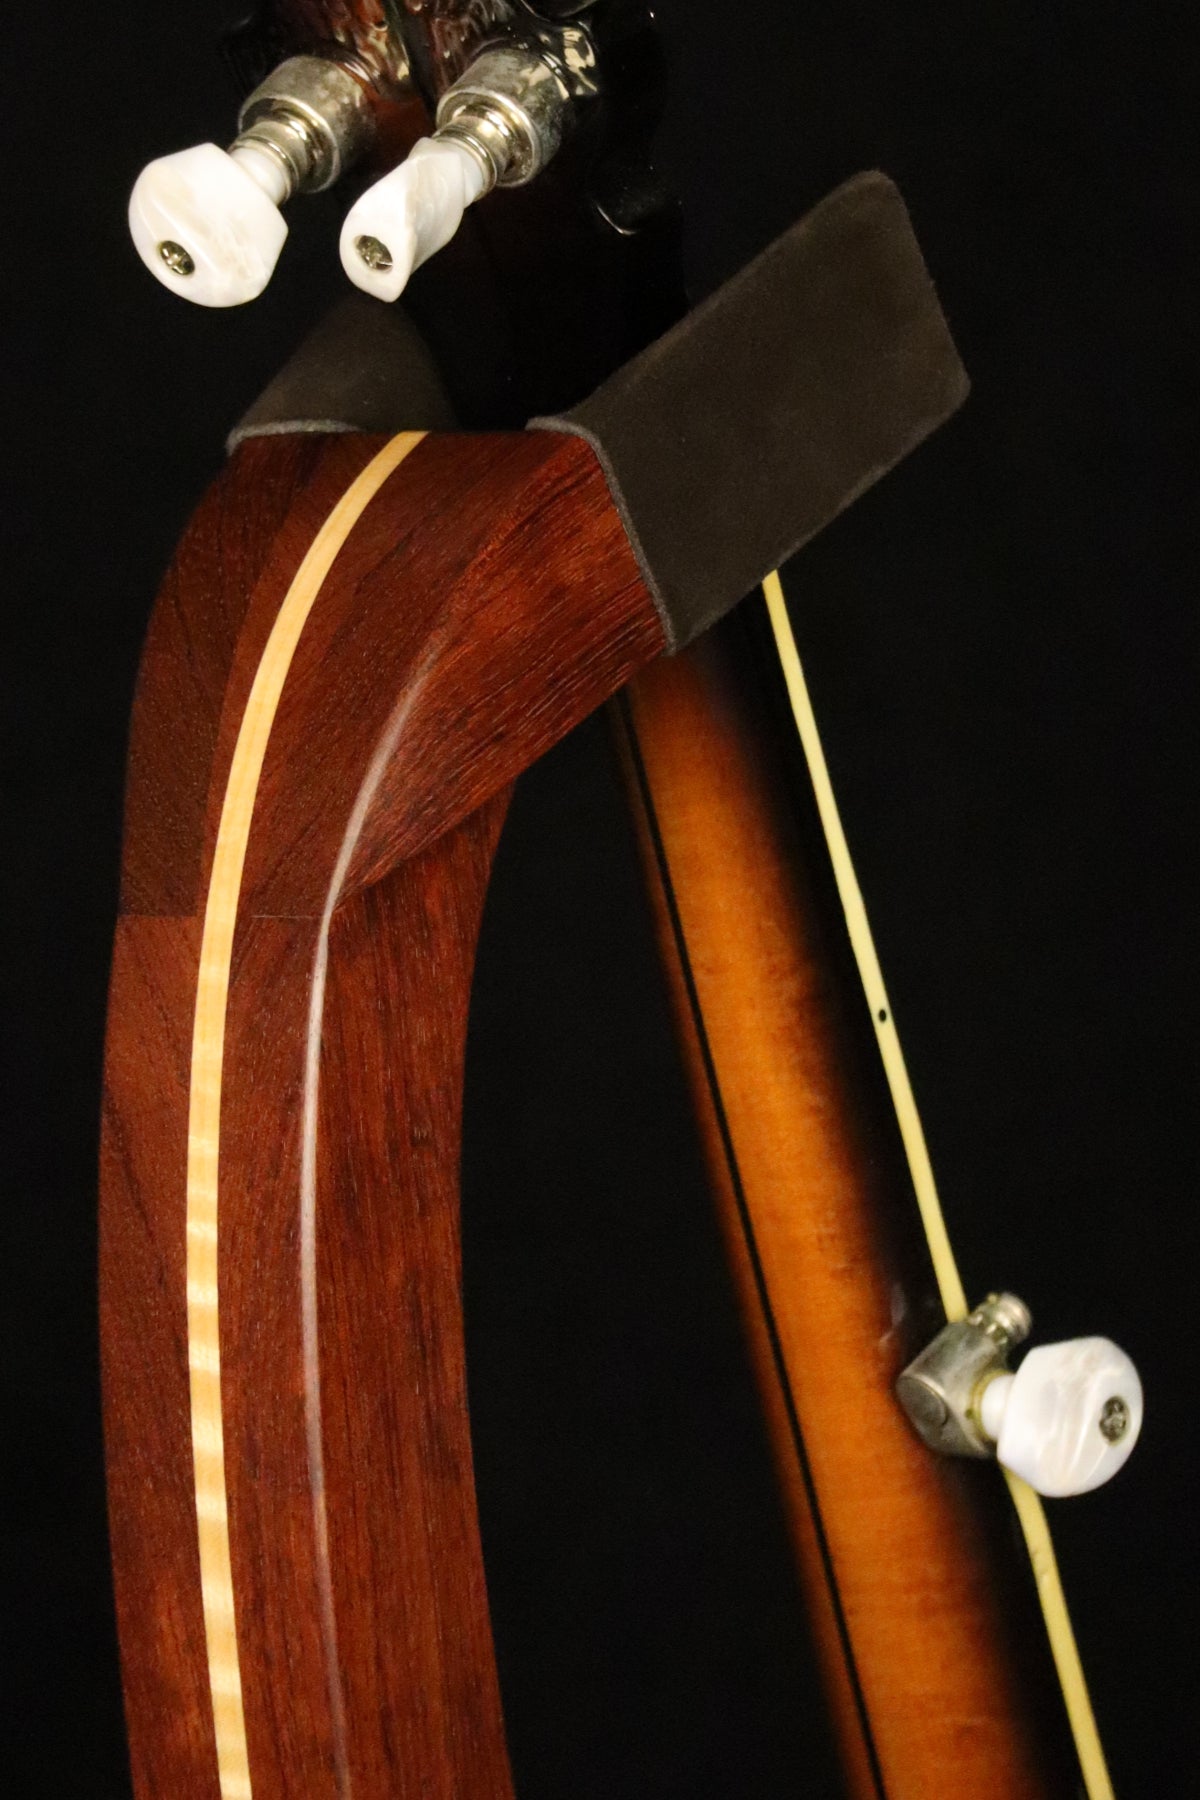 Folding bubinga rosewood and curly maple wood banjo floor stand yoke detail image with Alvarez banjo